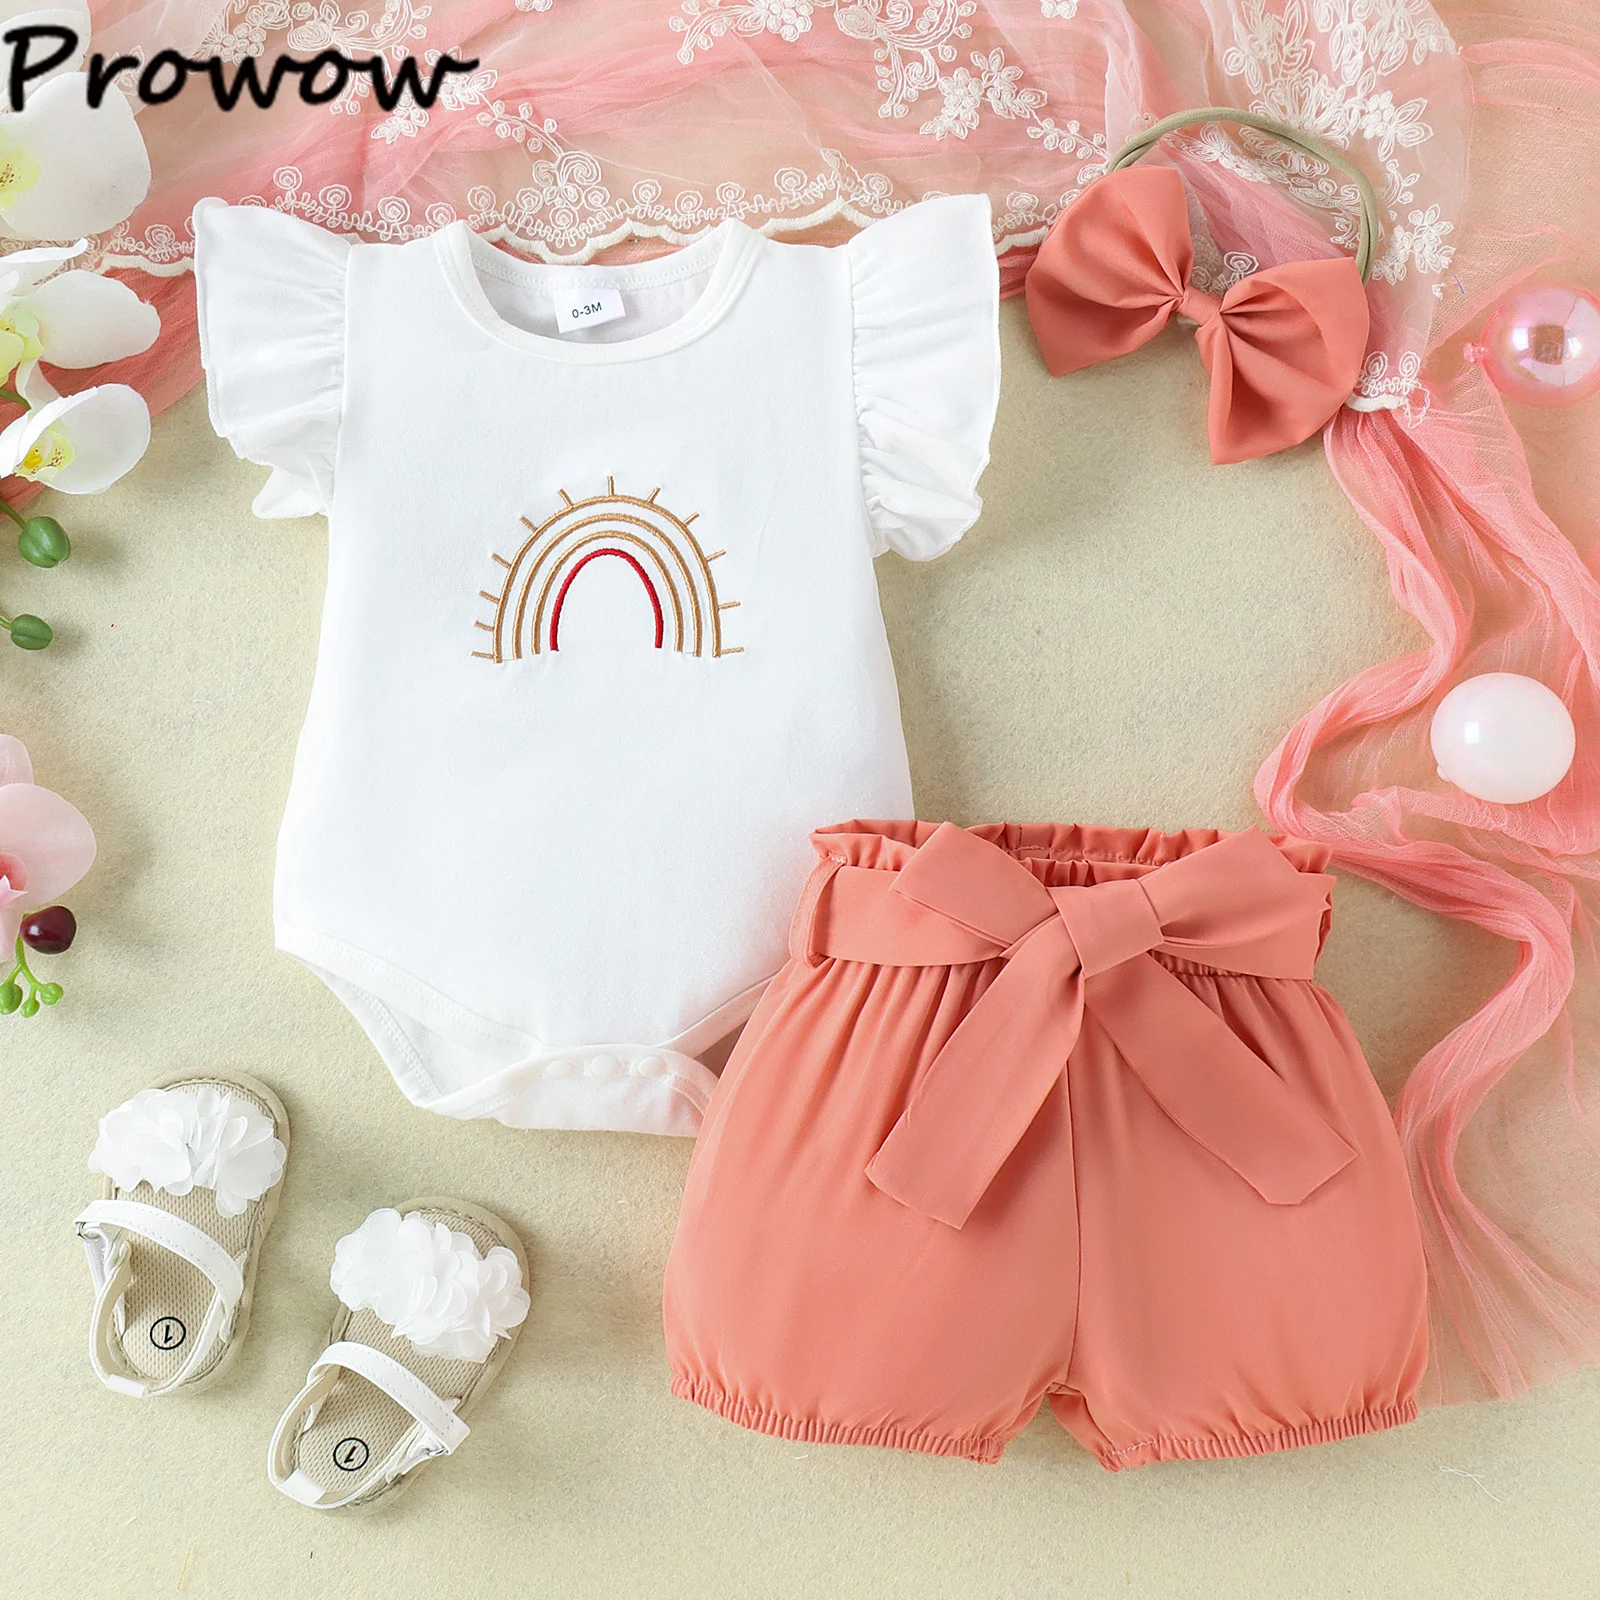 Prowow 0-18M Летни бебешки момичета облекло комплекти Fly ръкав бродерия дъга + колан шорти новородени дрехи момичета за бебета